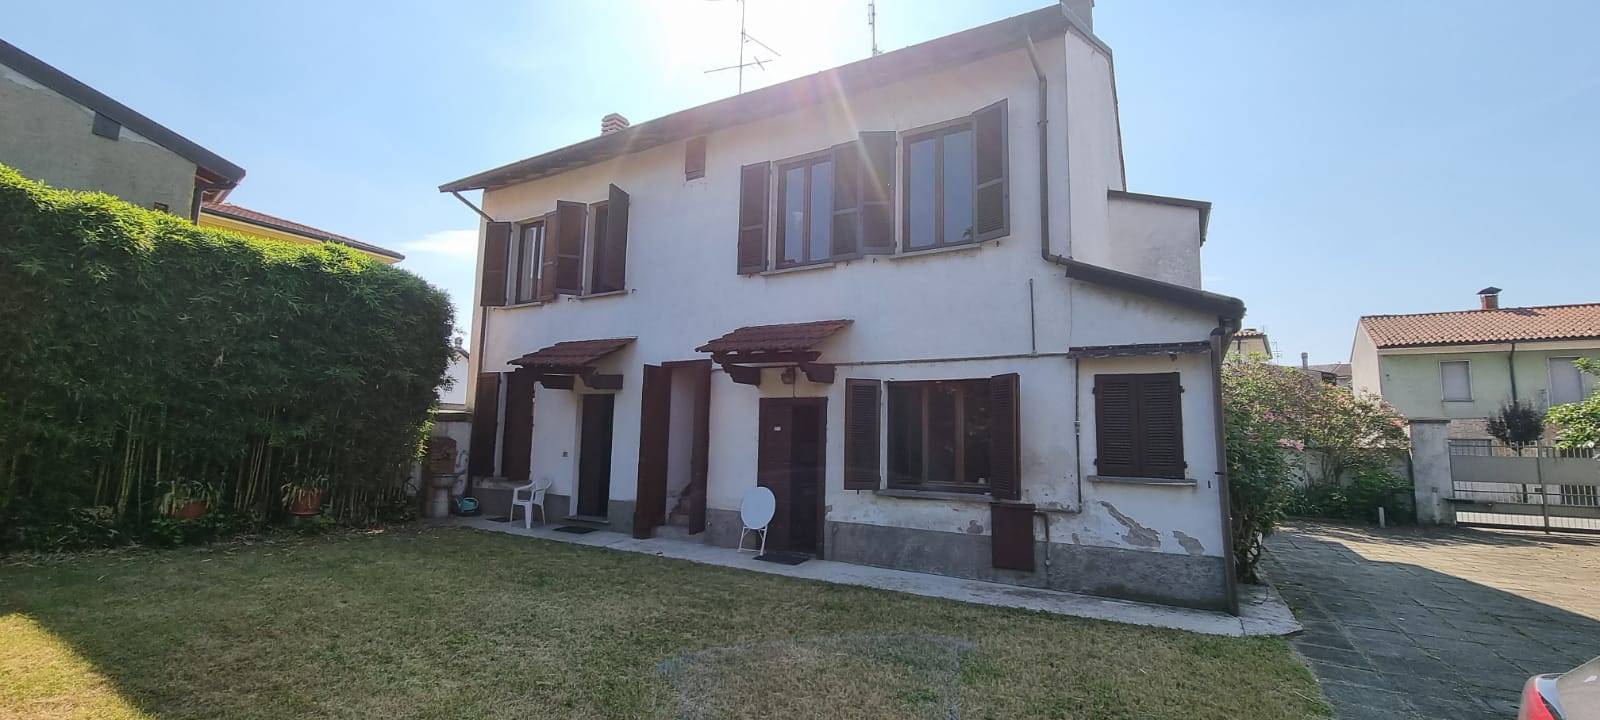 Villa in vendita a Motta Visconti, 8 locali, prezzo € 220.000 | CambioCasa.it